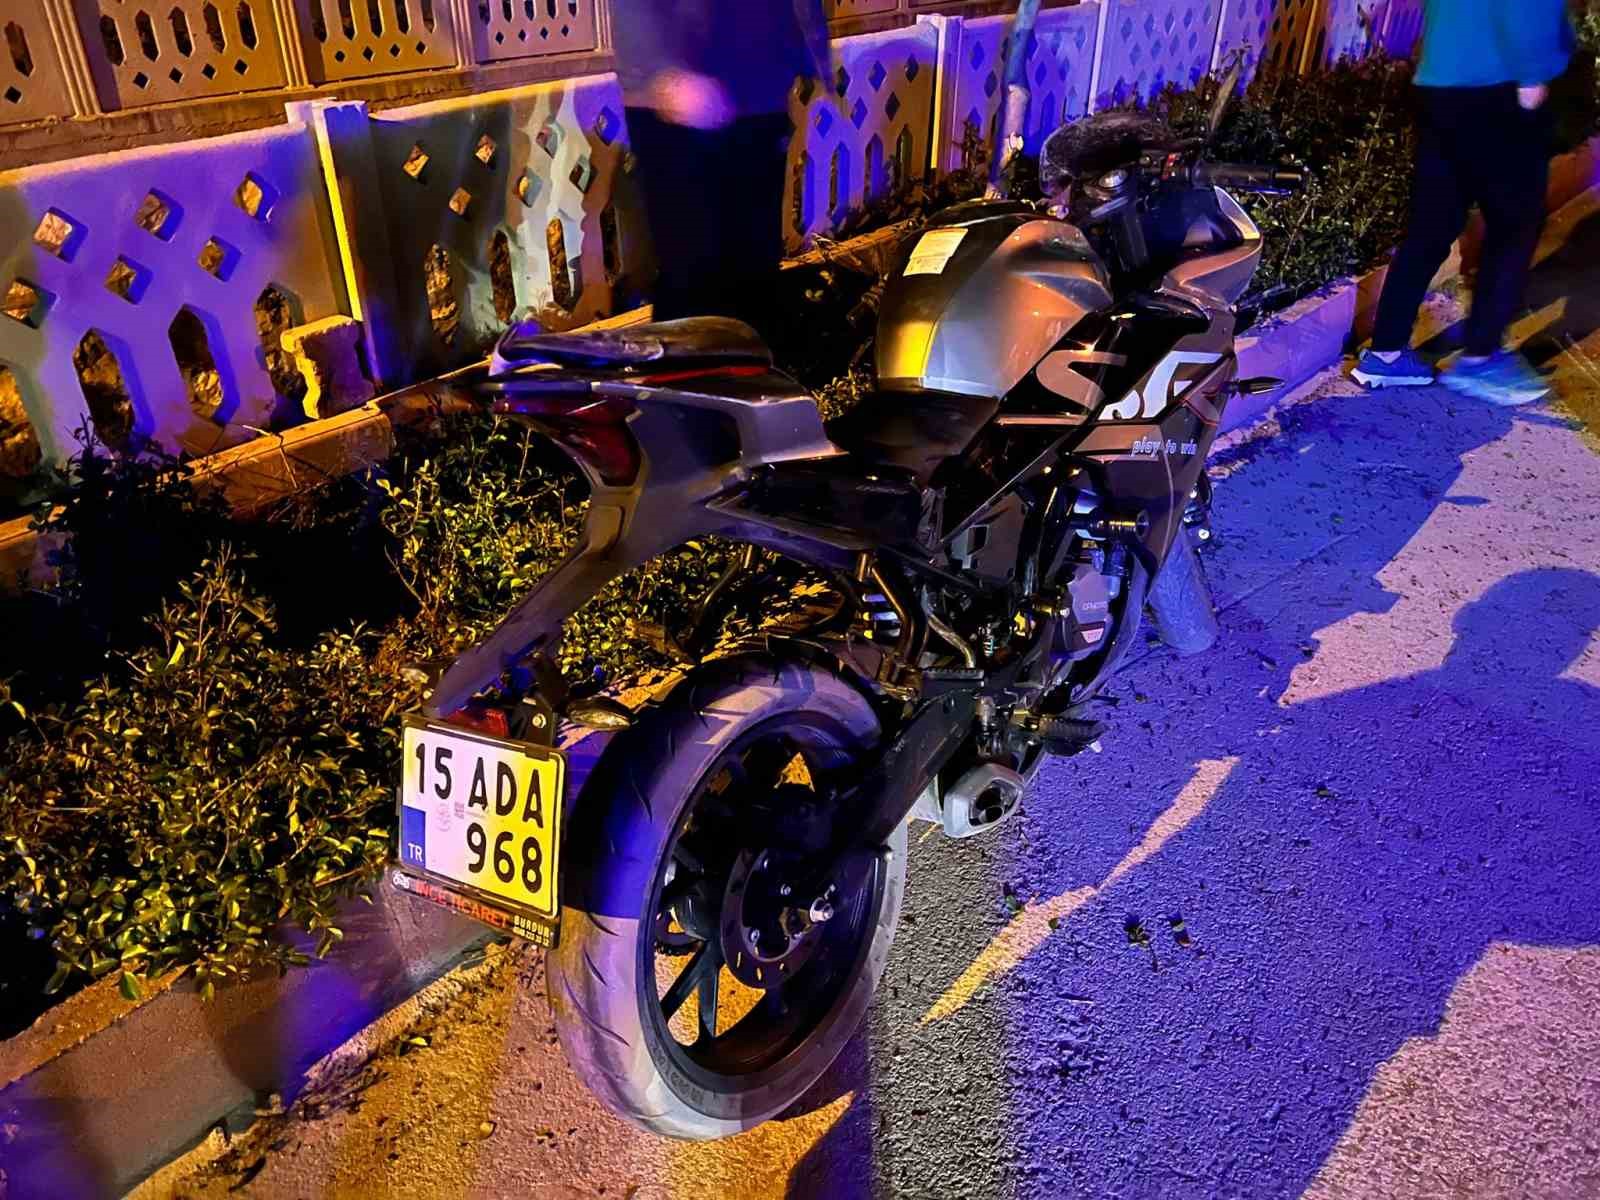 Burdur’da virajı alamayan motosikletli dereye uçarak yaralandı
